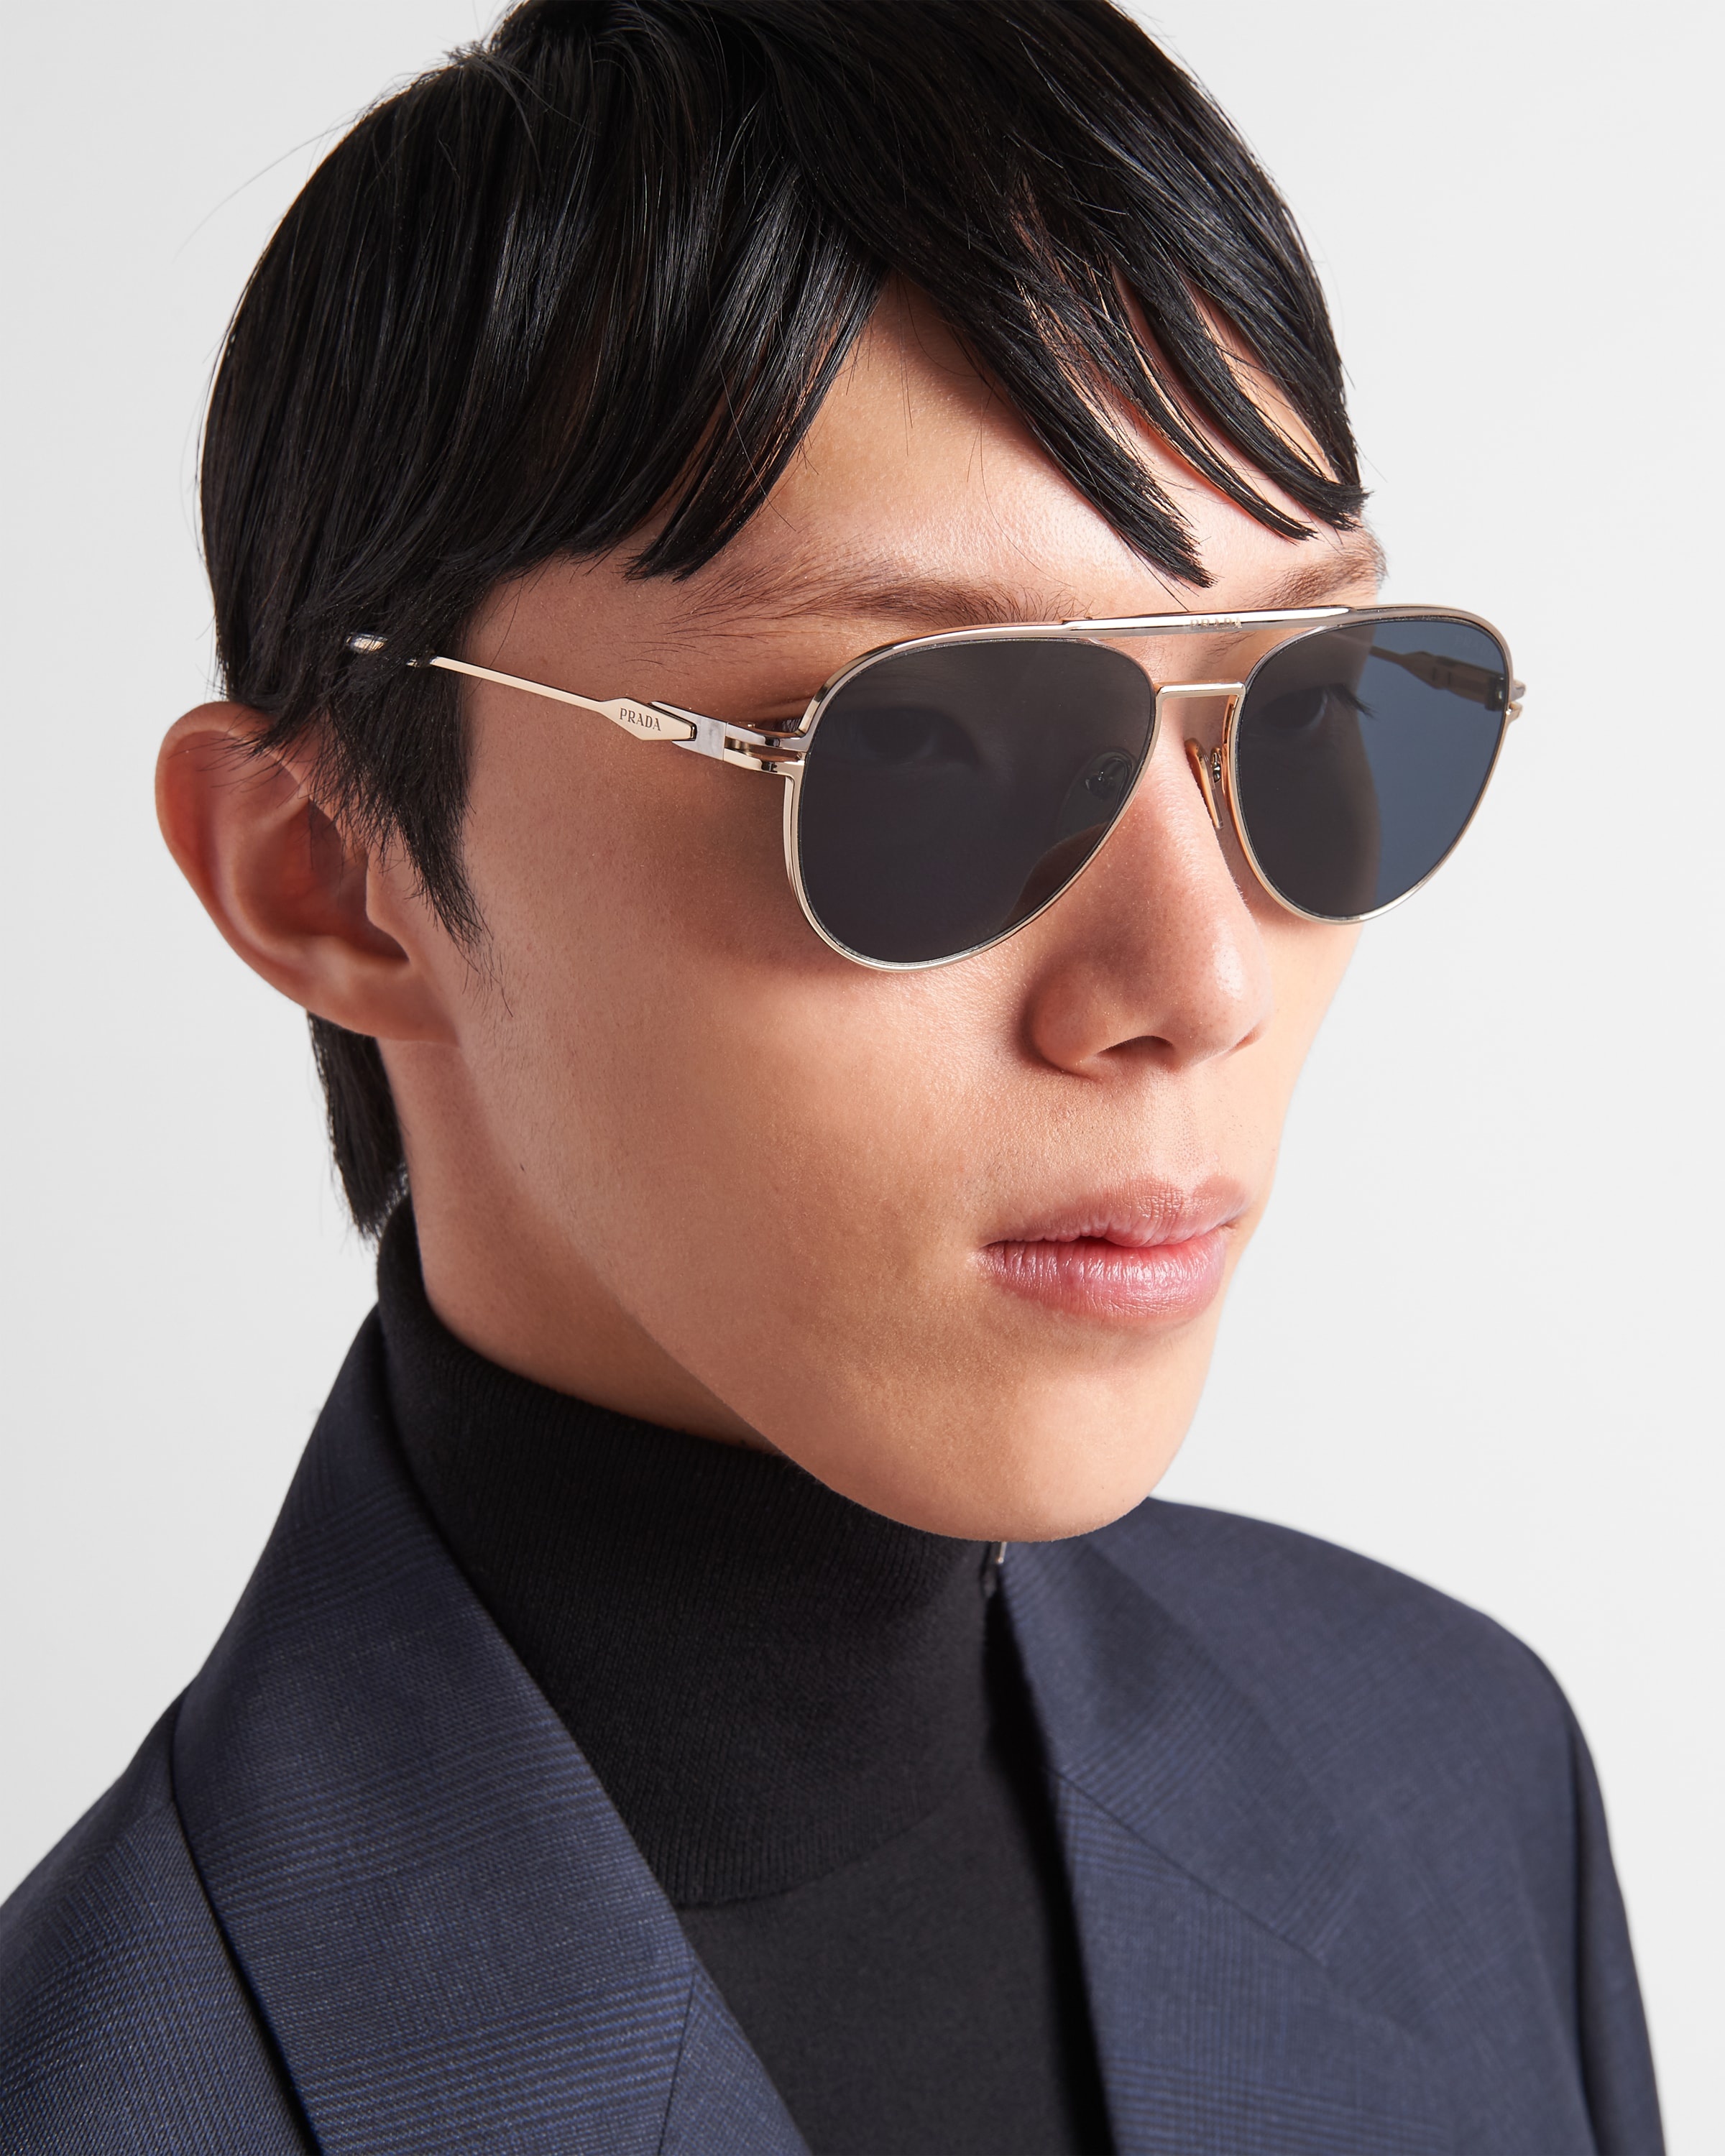 Sunglasses with Prada logo - 2